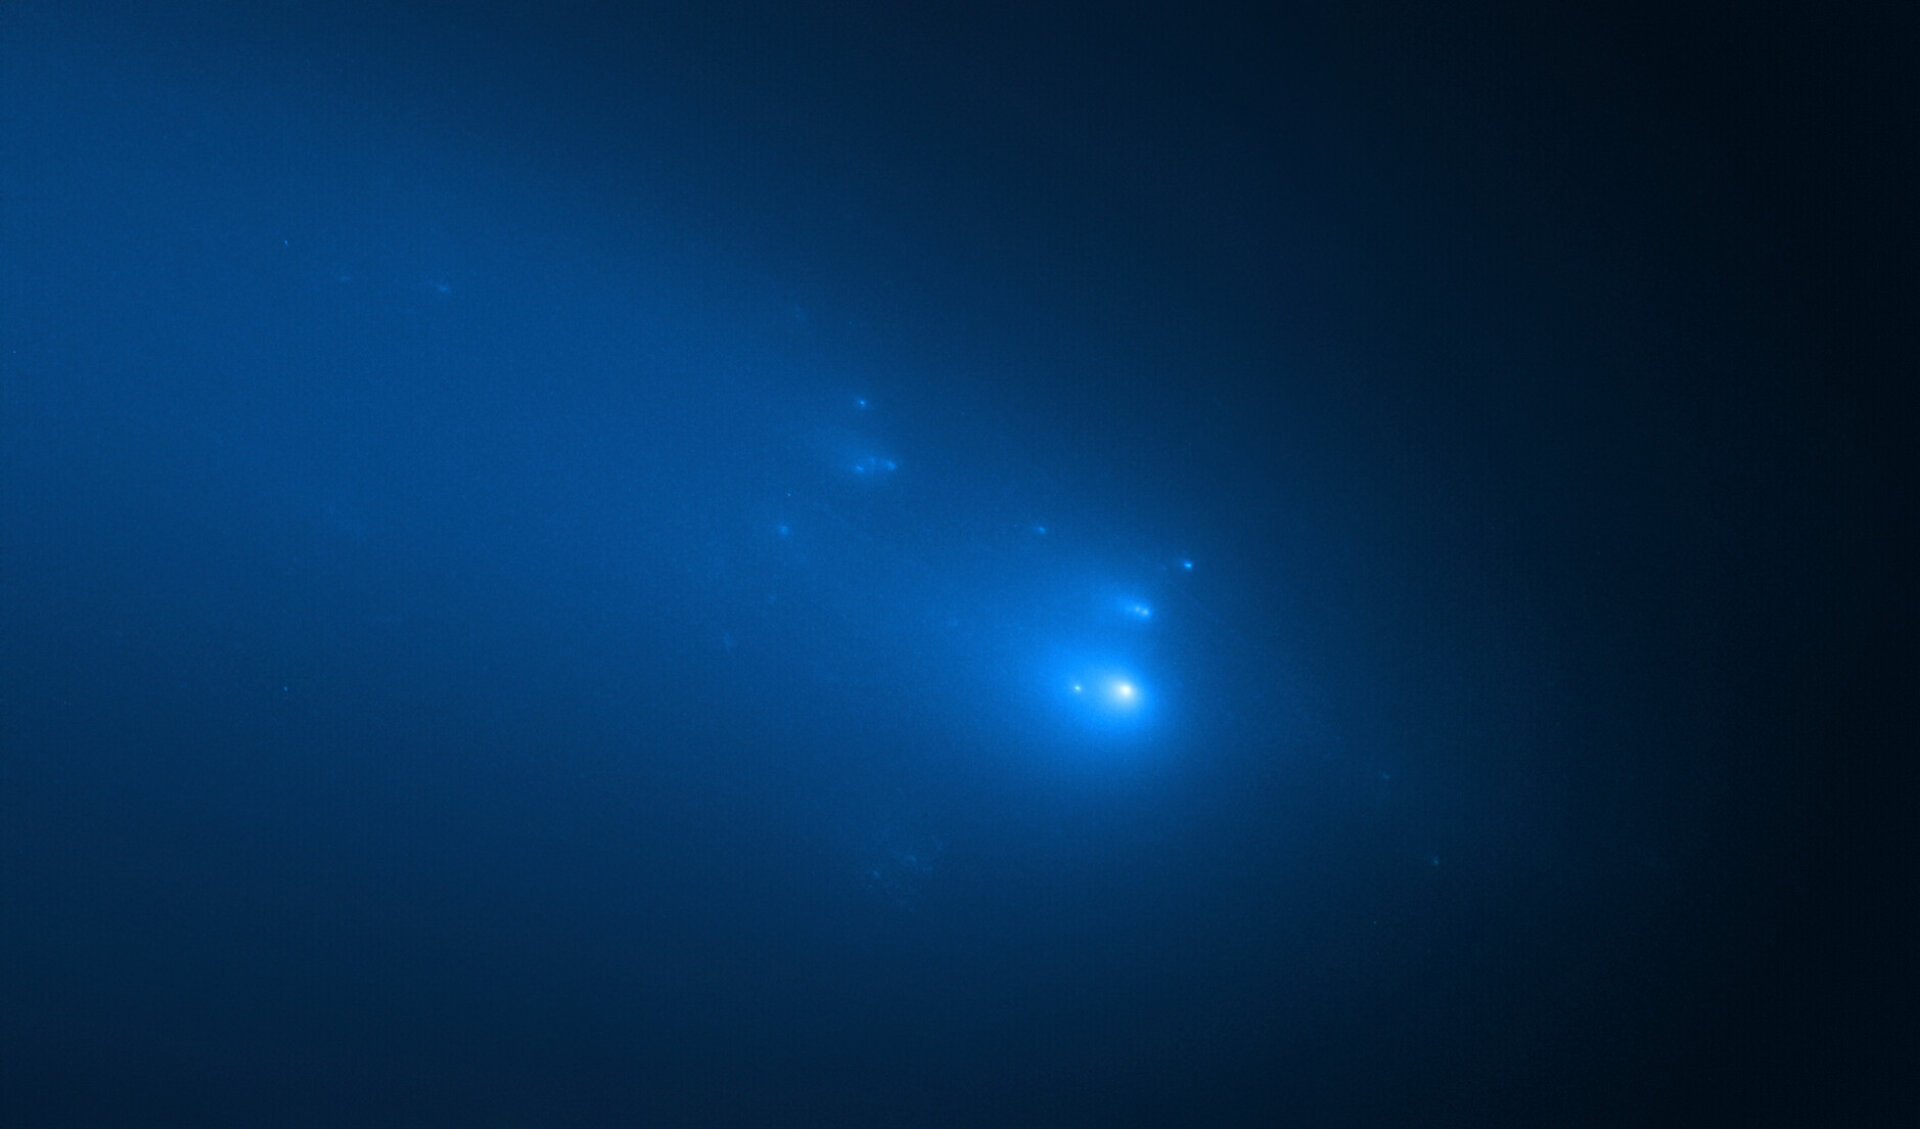 Hubble observation of Comet ATLAS on 23 April 2020